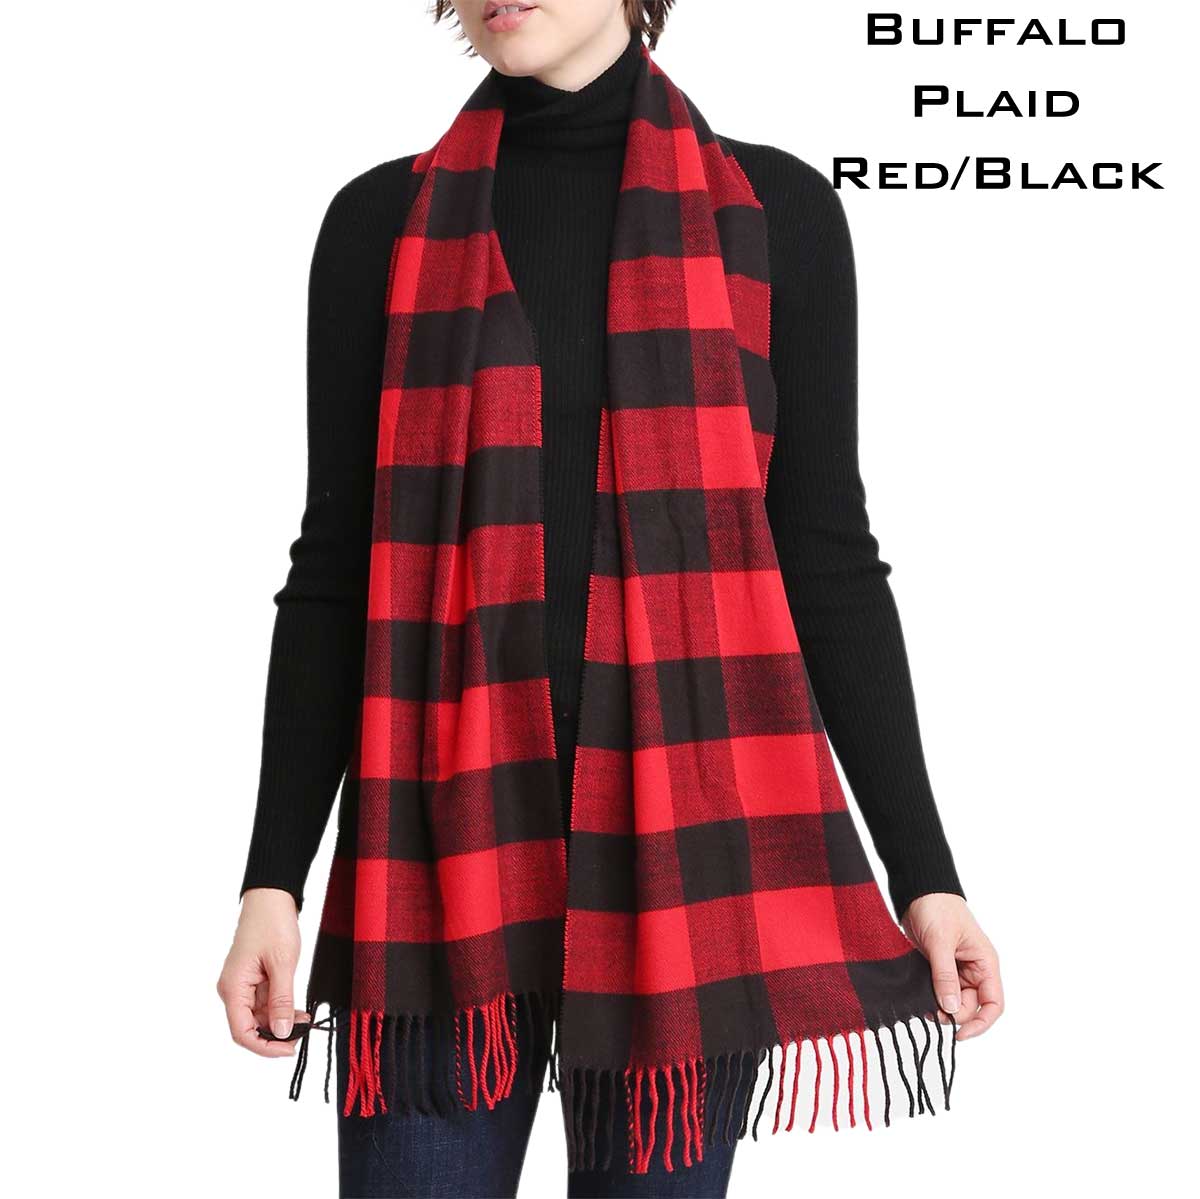 1337 - Black/Red Buffalo Plaid